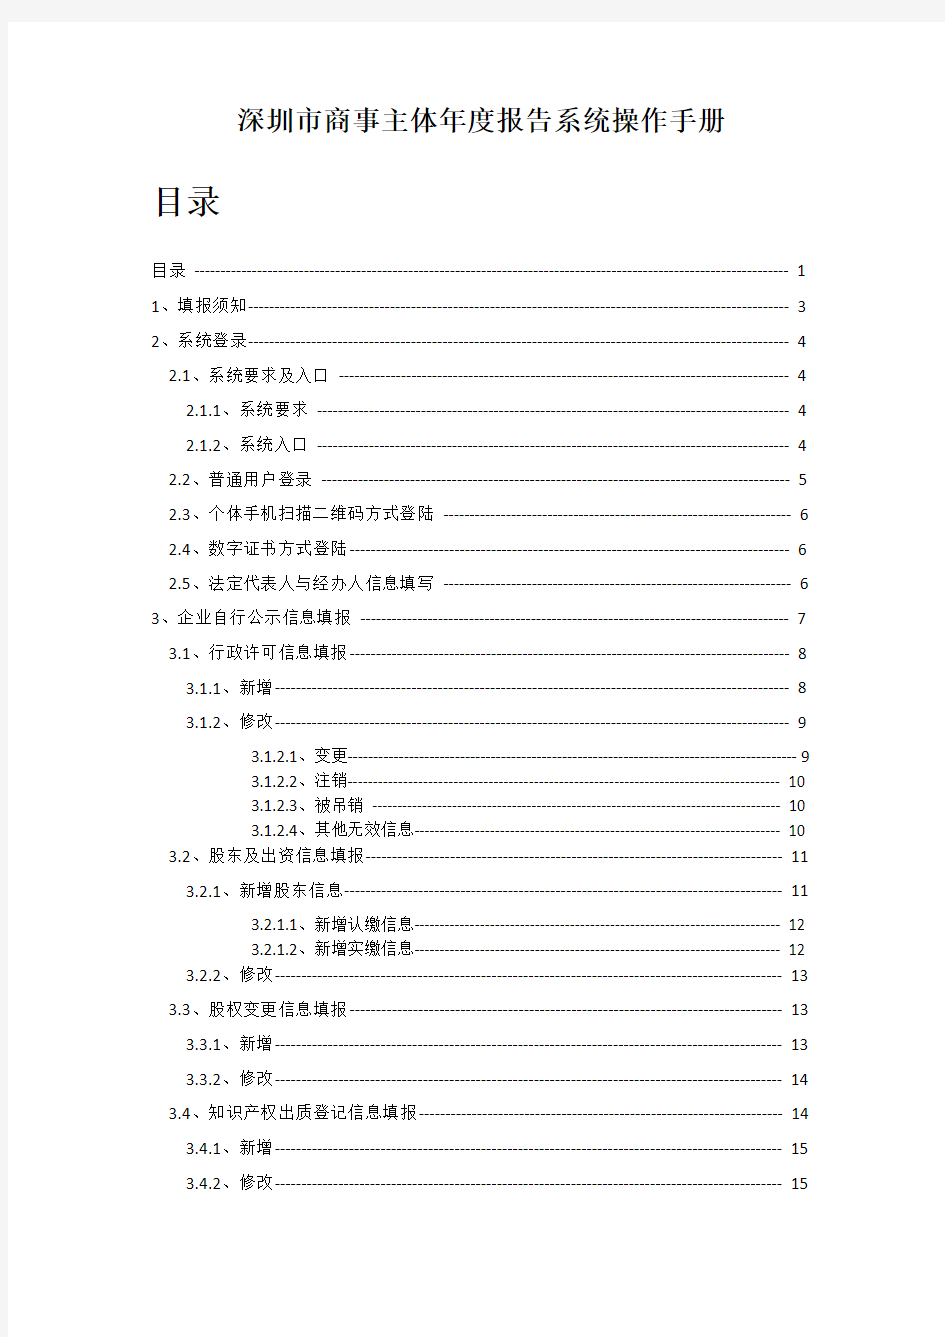 深圳市商事主体年度报告系统操作手册